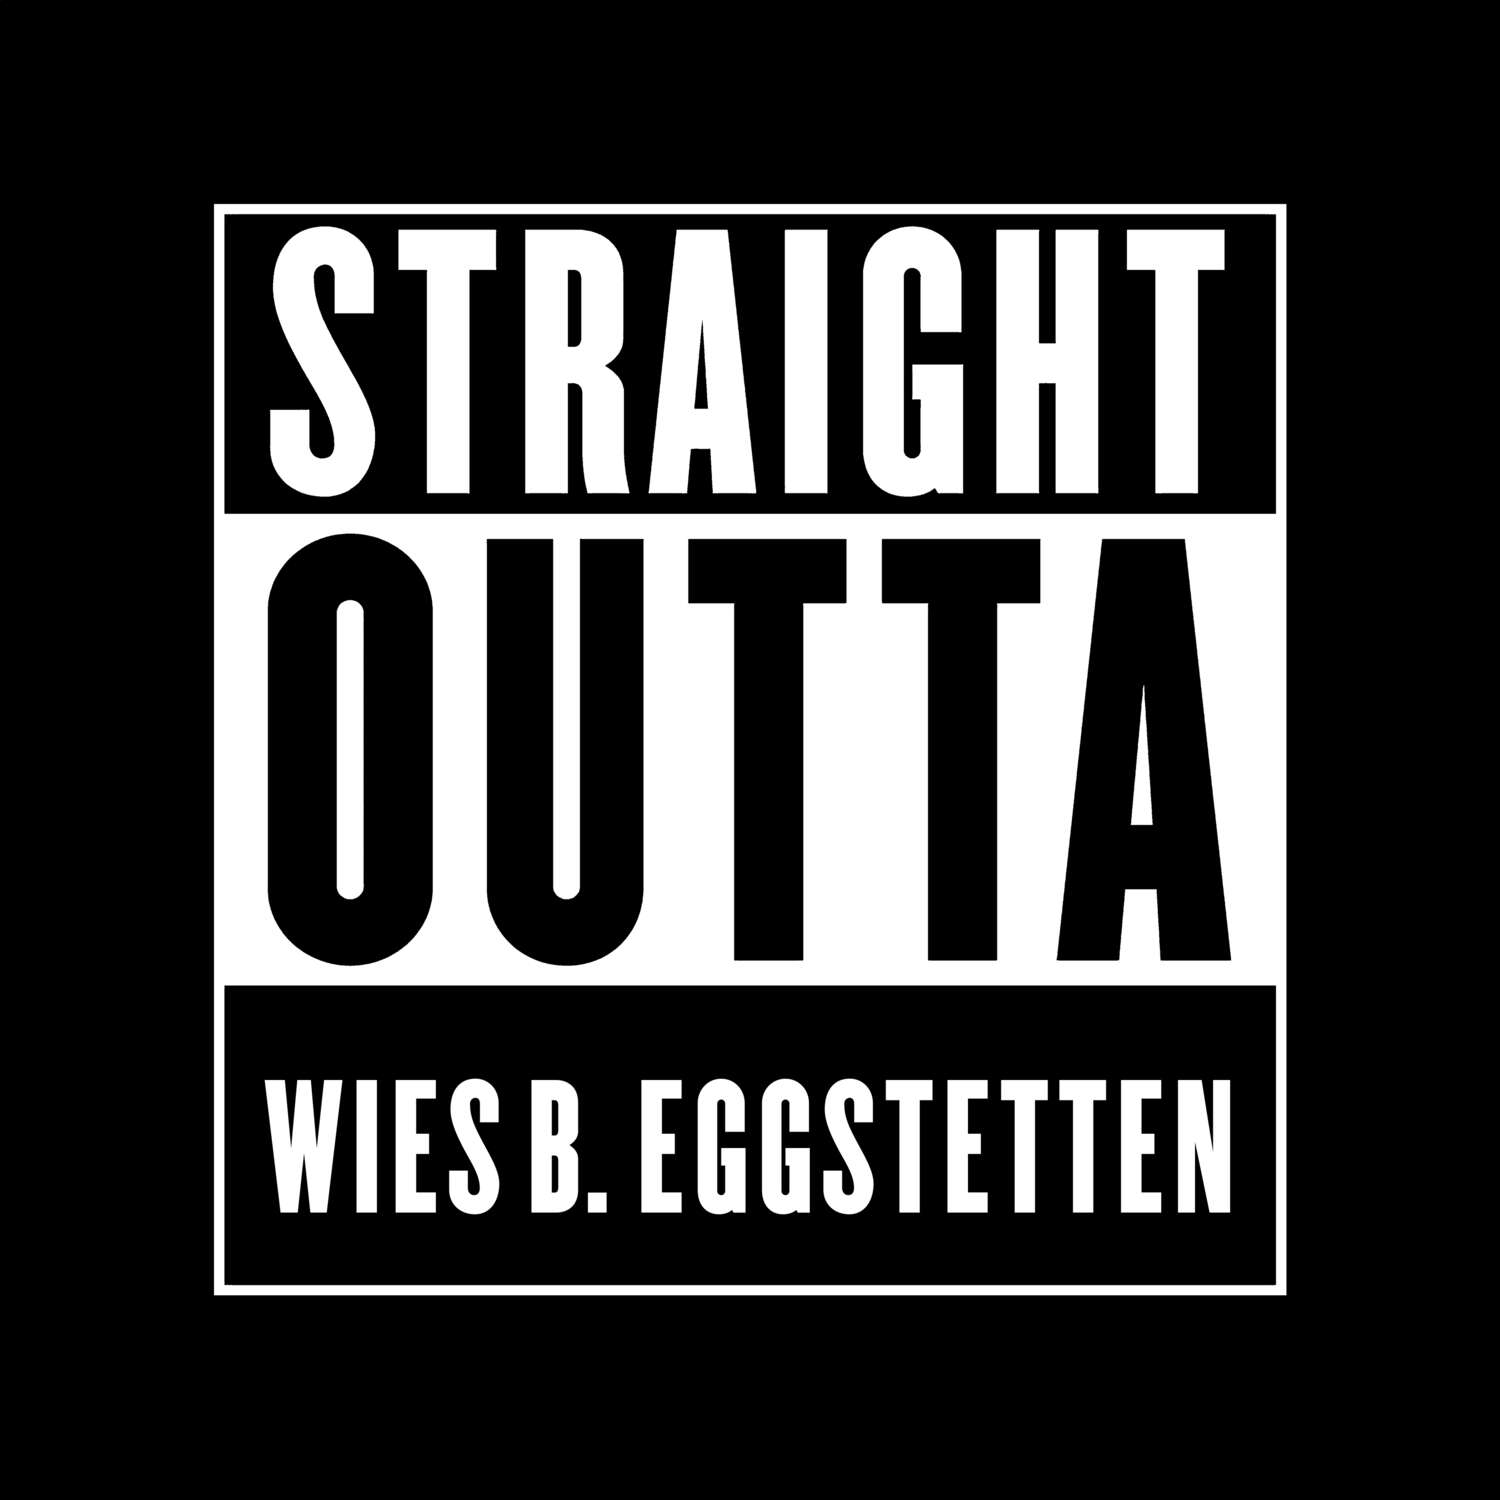 Wies b. Eggstetten T-Shirt »Straight Outta«